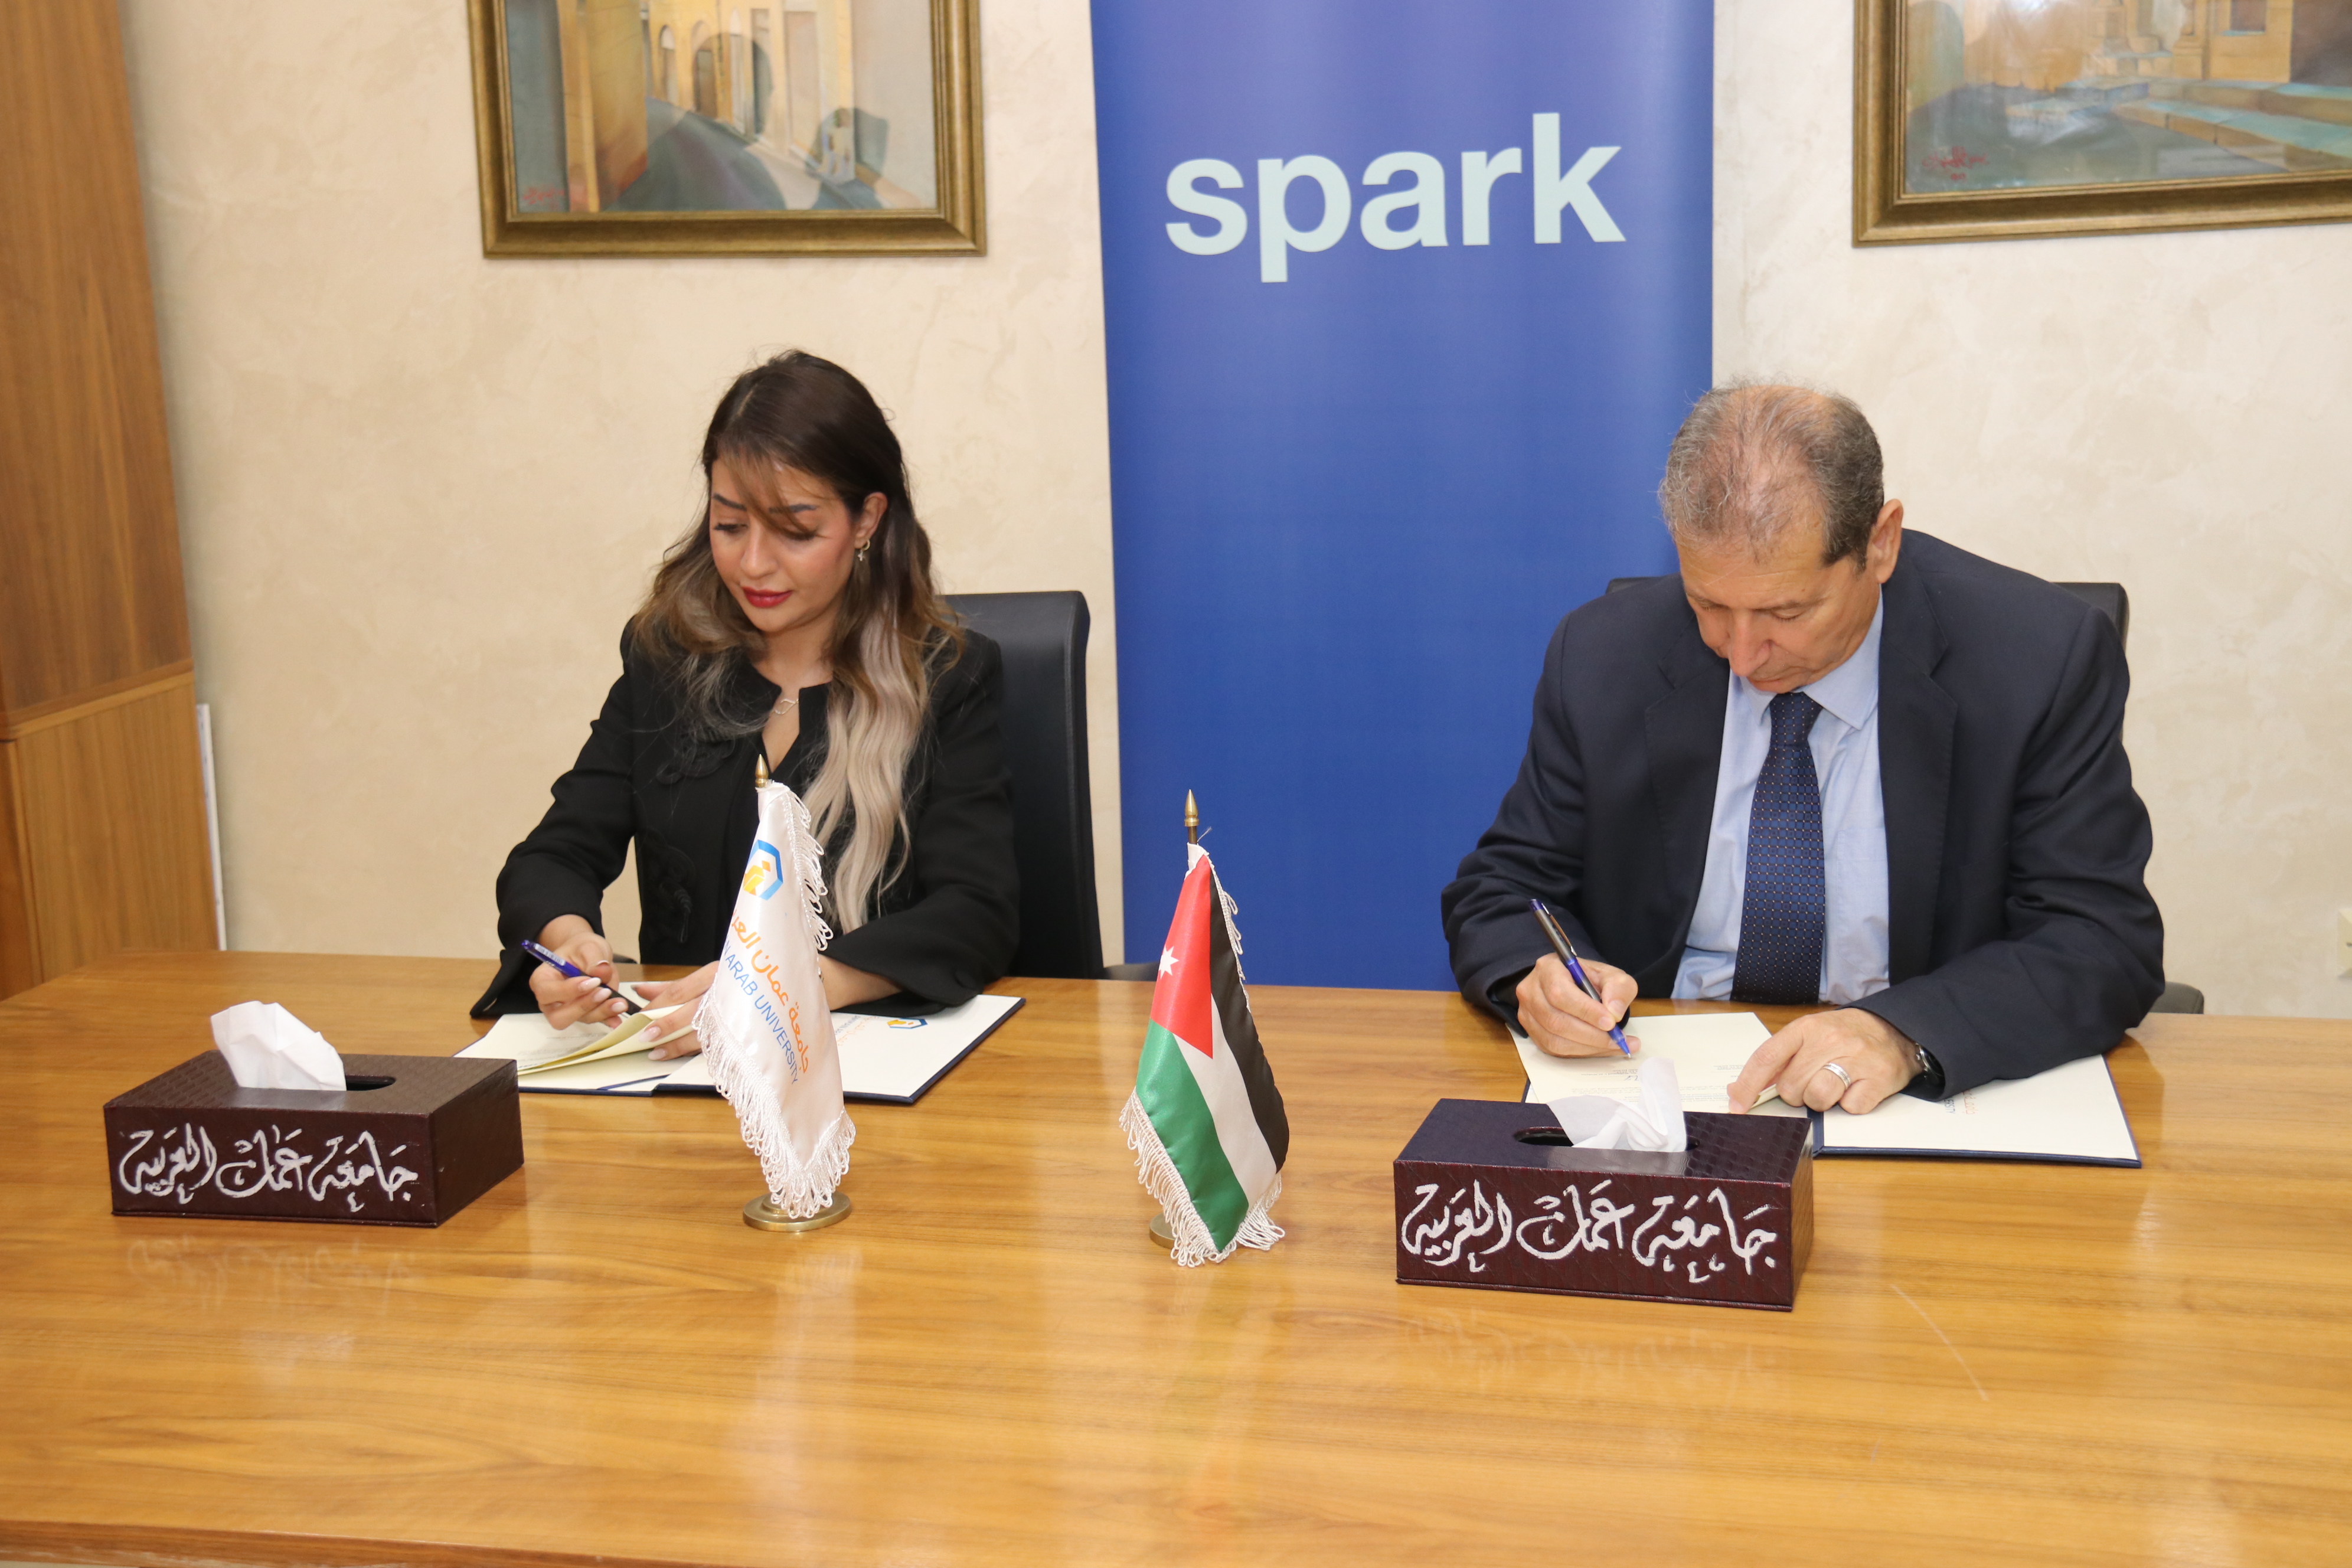 جامعة عمان العربية ومنظمة سبارك / الأردن توقعان مذكرة تفاهم2